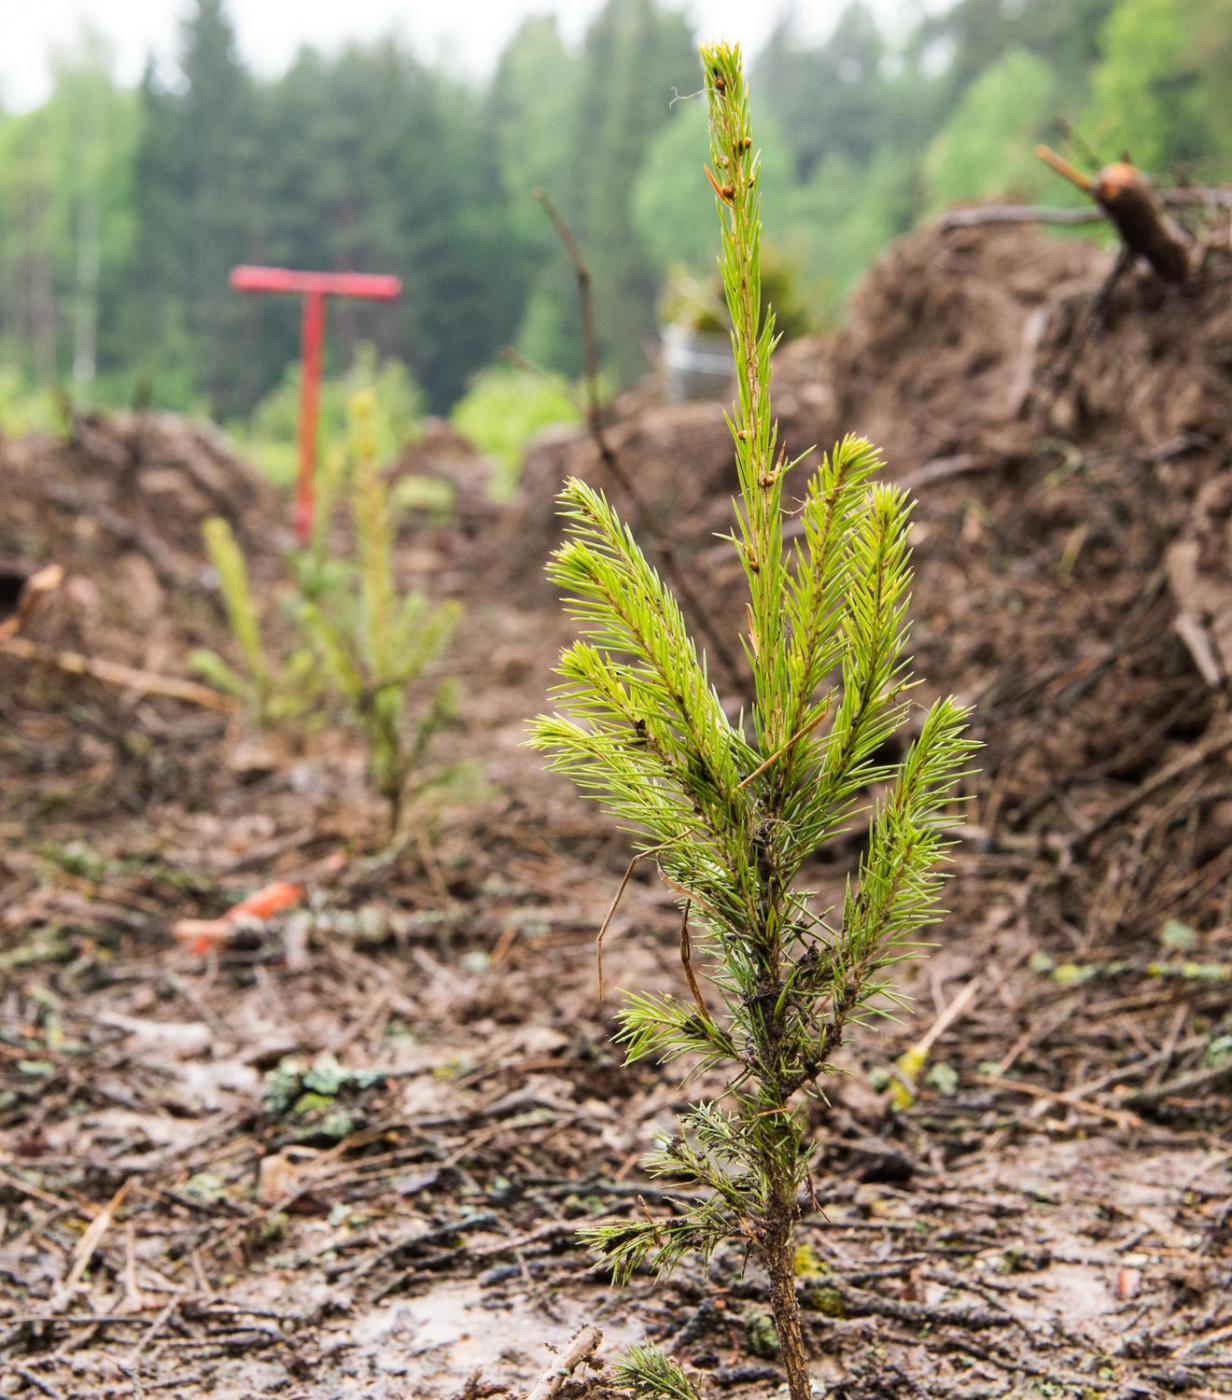 В Калужской области начаты весенние работы по восстановлению лесов - фото 1